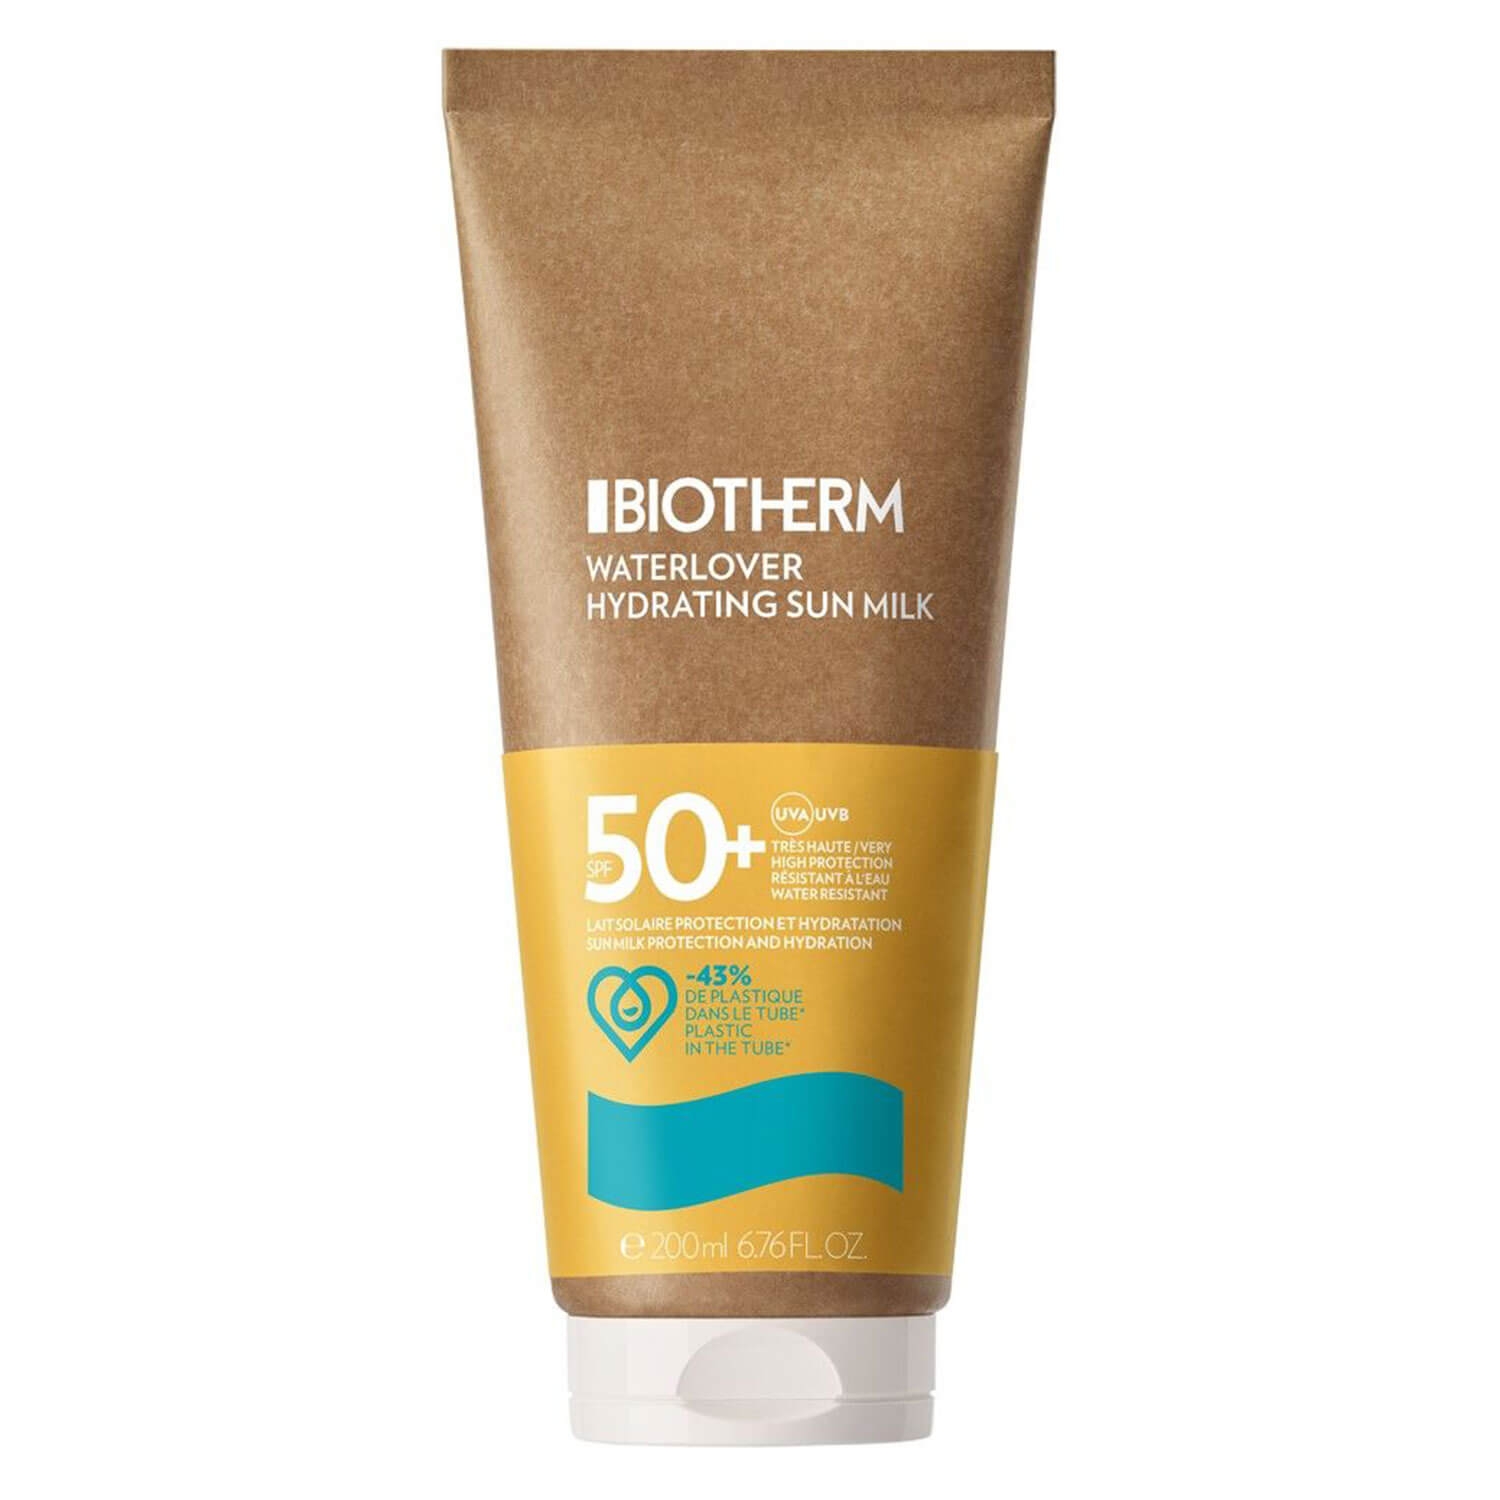 Produktbild von Biotherm Sun - Waterlover Hydrating Sun Milk SPF 50+